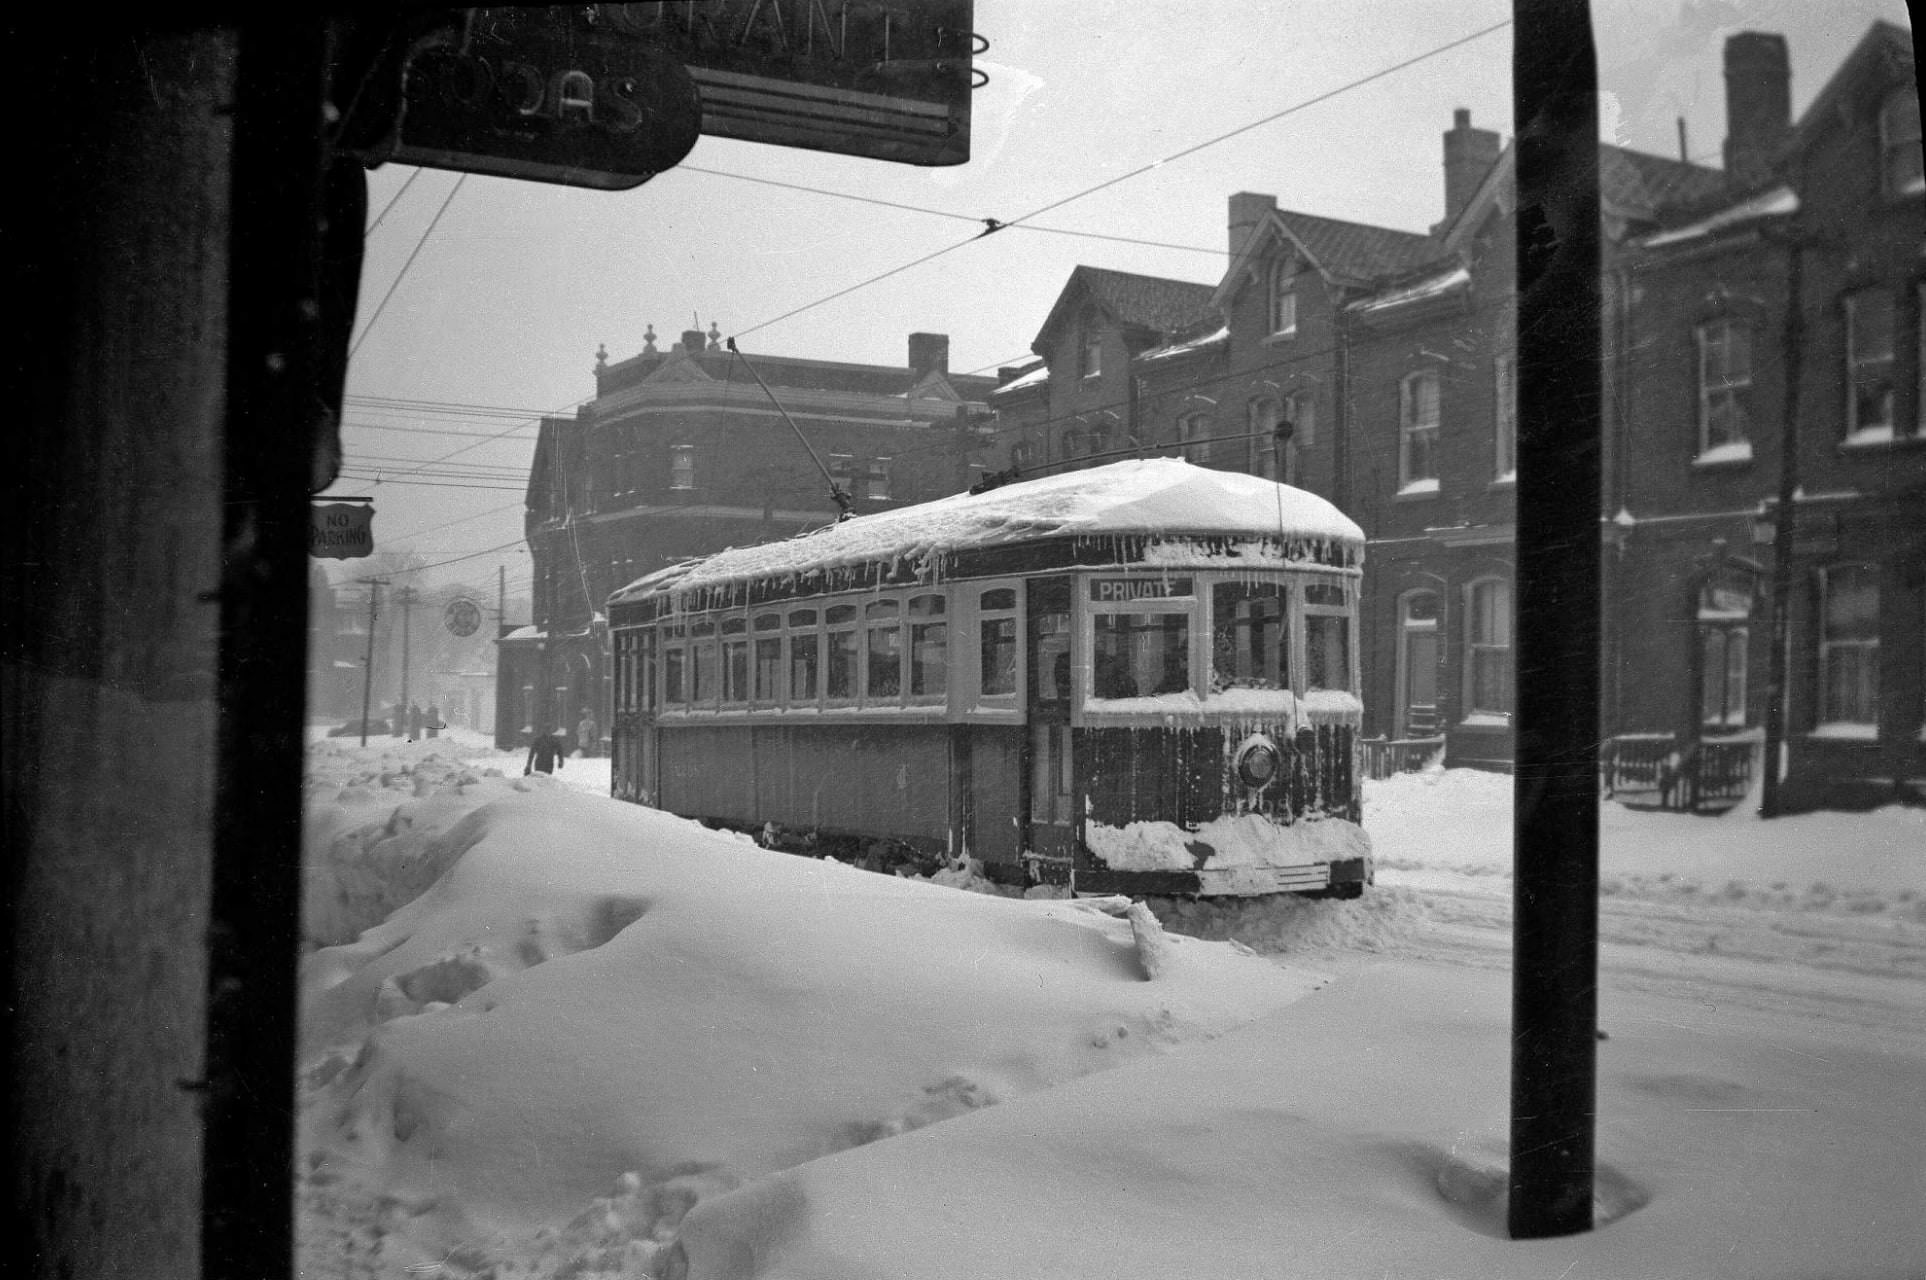 TTC Streetcar No. 2208 on Church St. near Carlton St., Dec. 12, 1944.